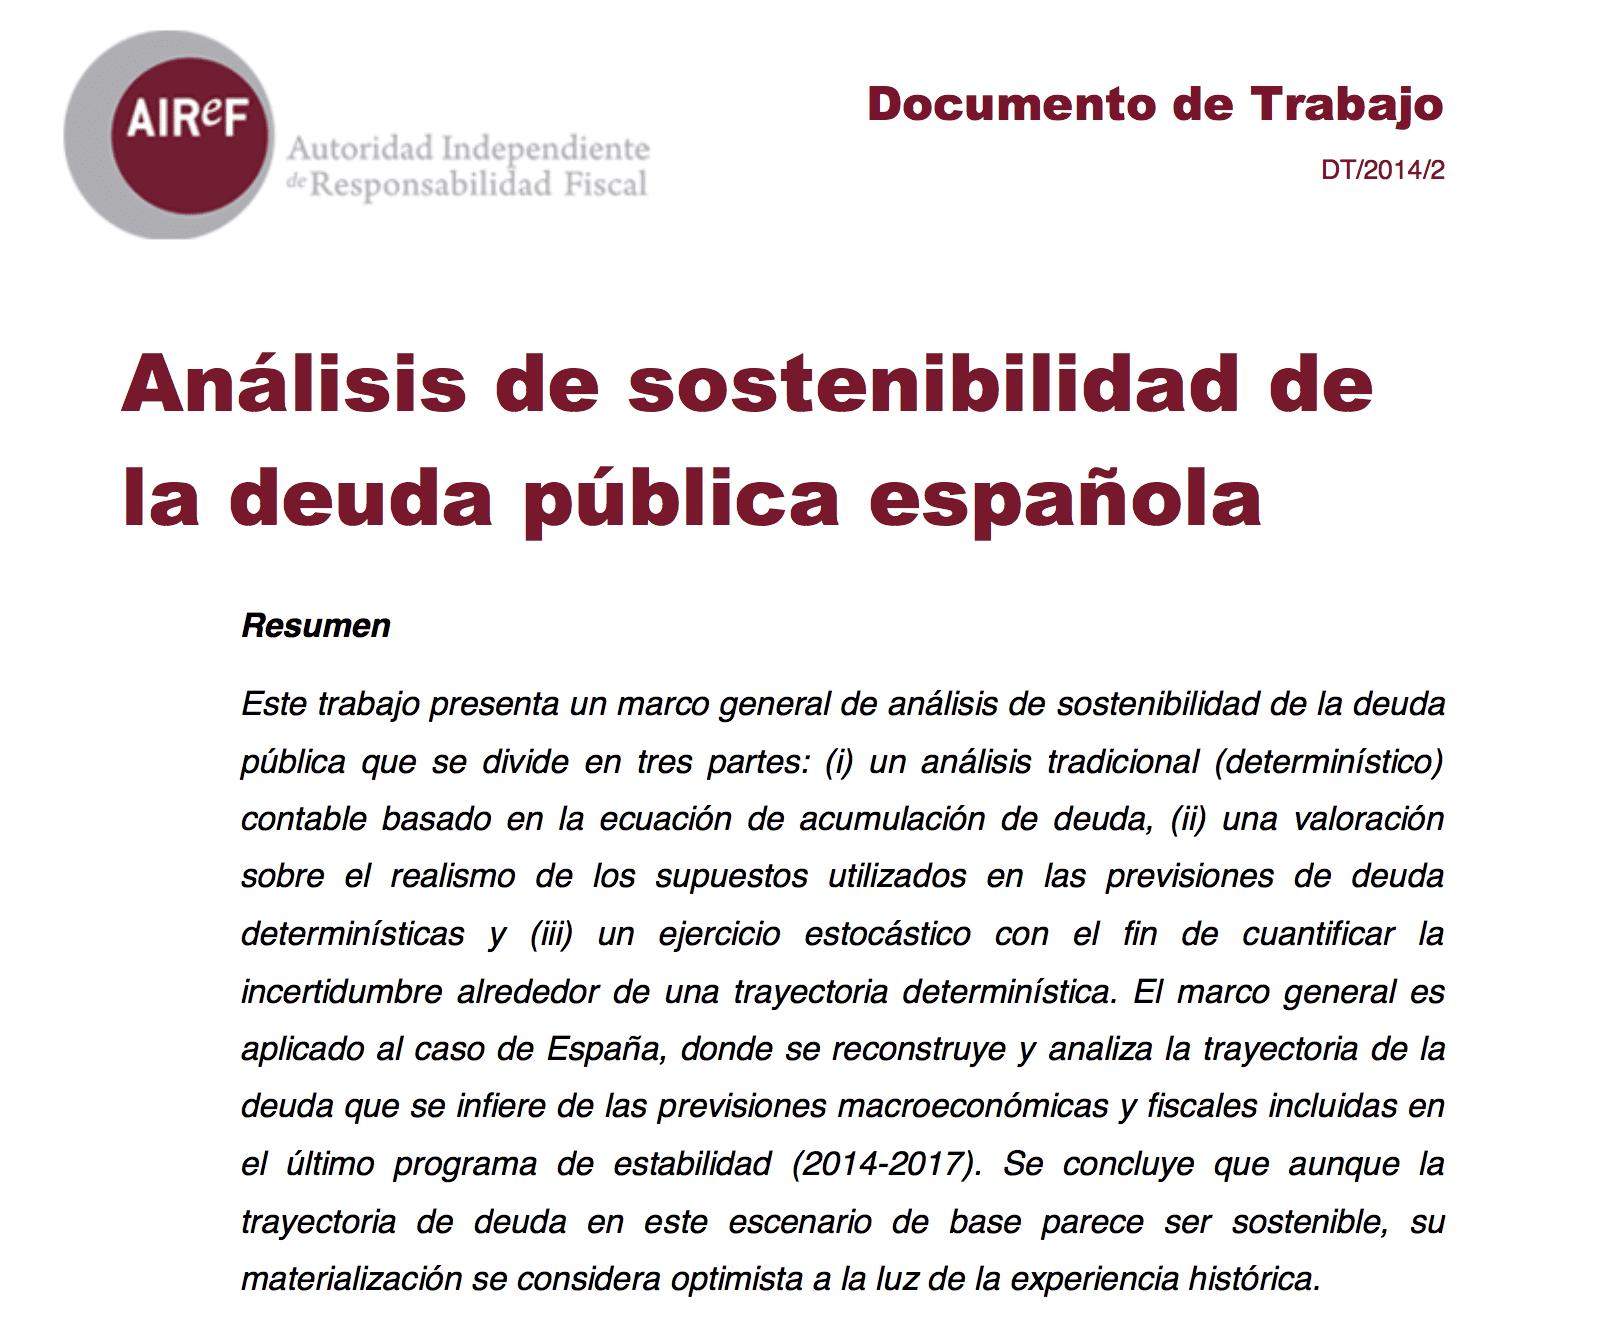 Análisis de la sostenibilidad de la deuda pública española